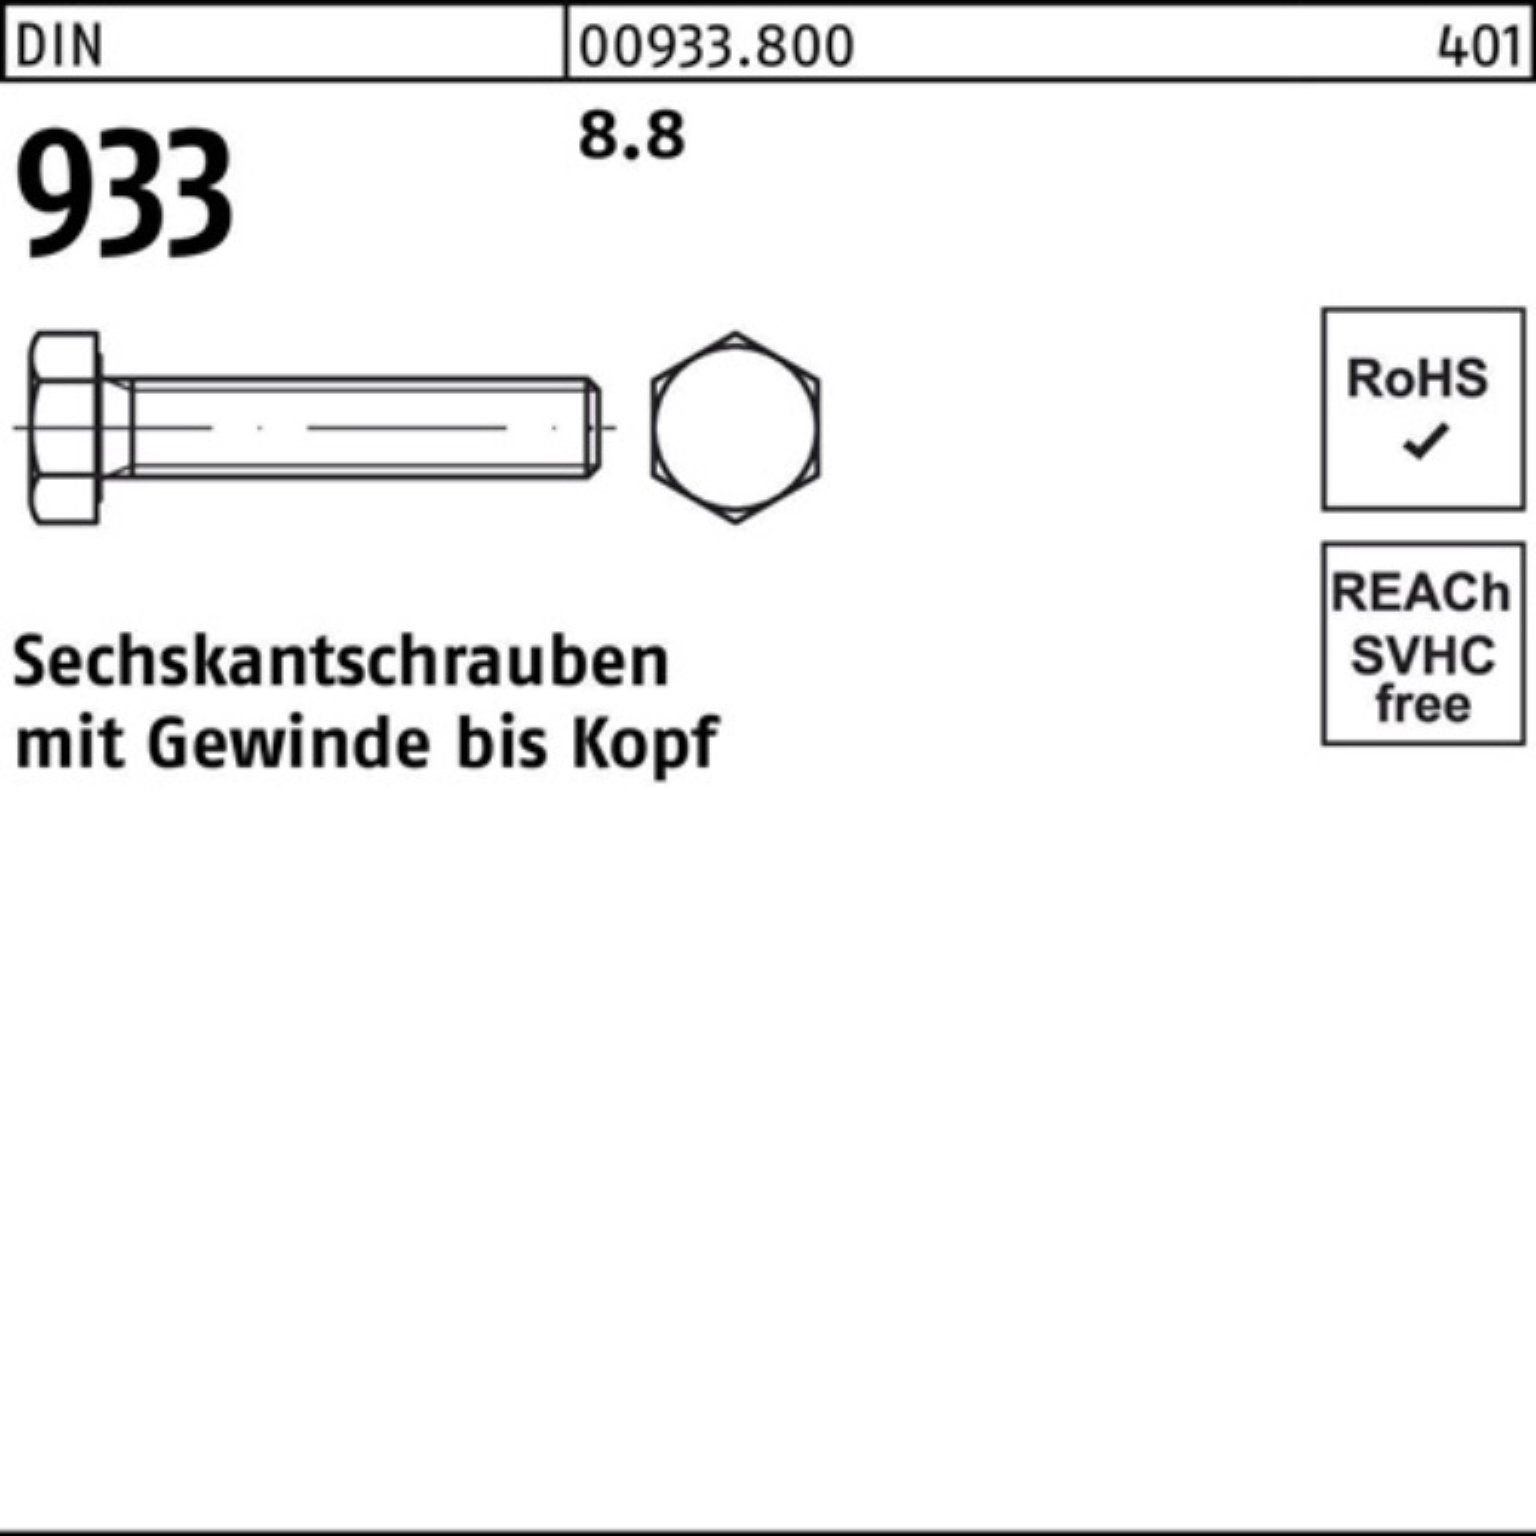 Stück DIN Sechskantschraube 240 Reyher M24x 1 Sechskantschraube 933 DIN Pack VG 933 100er 8.8